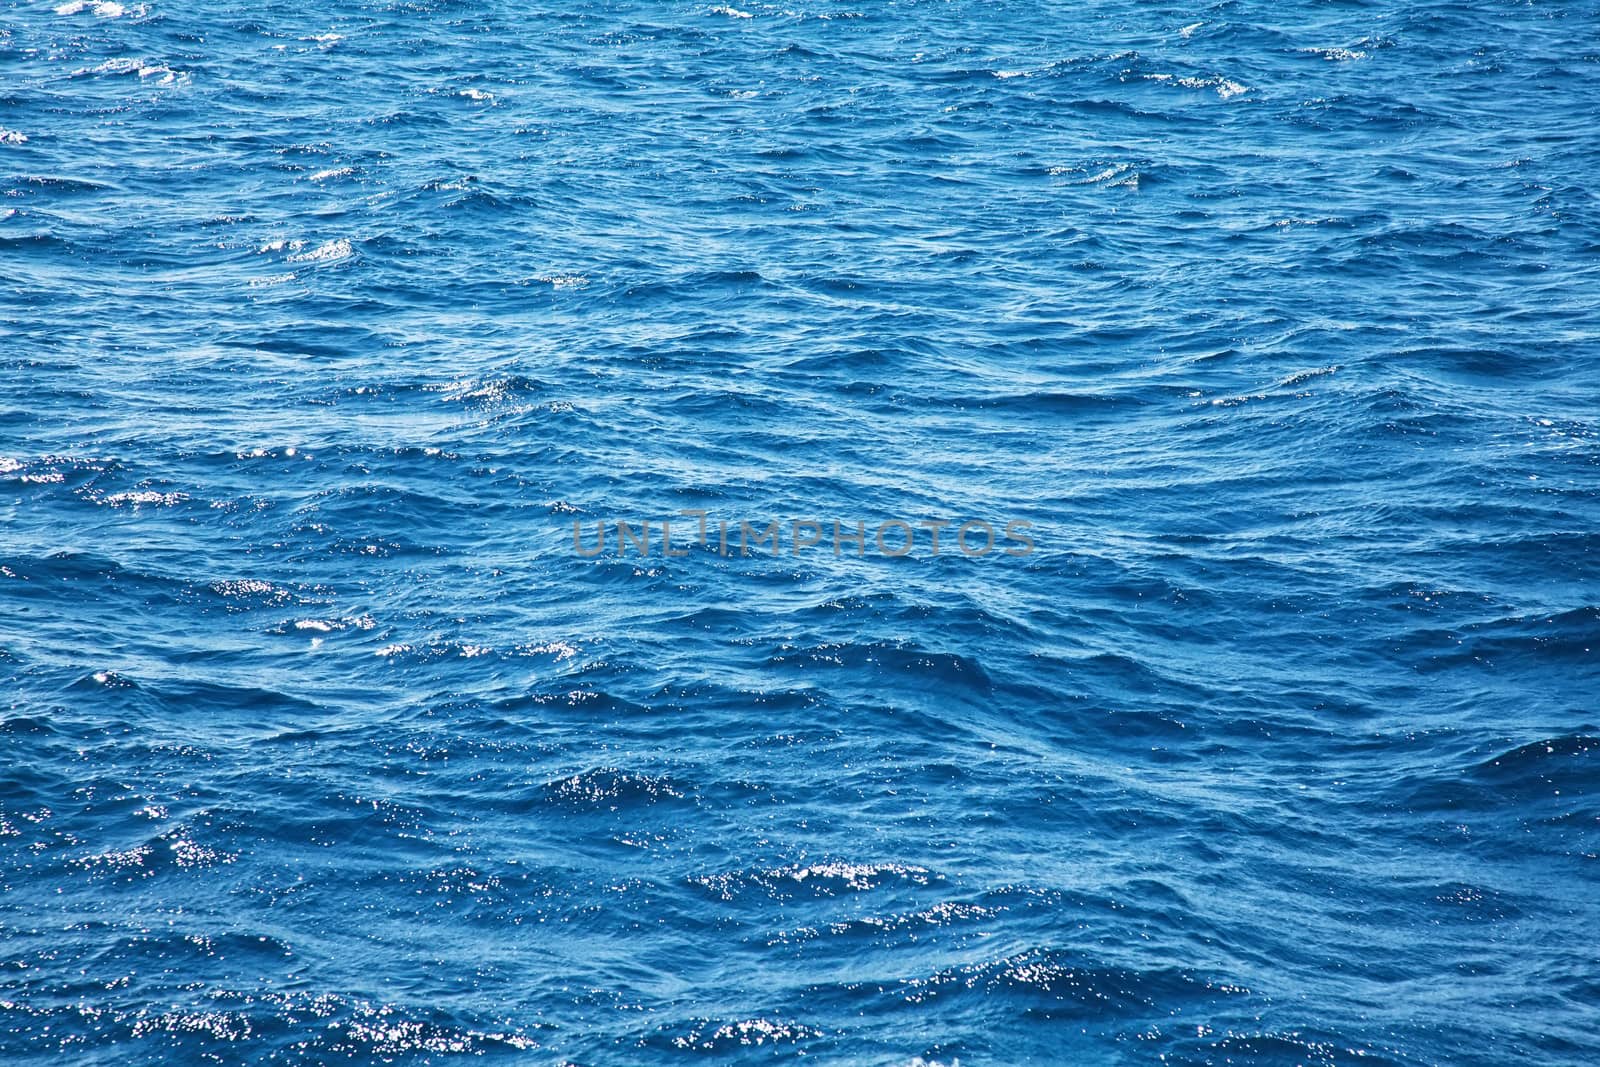 Deep blue ocean water with waves by RawGroup